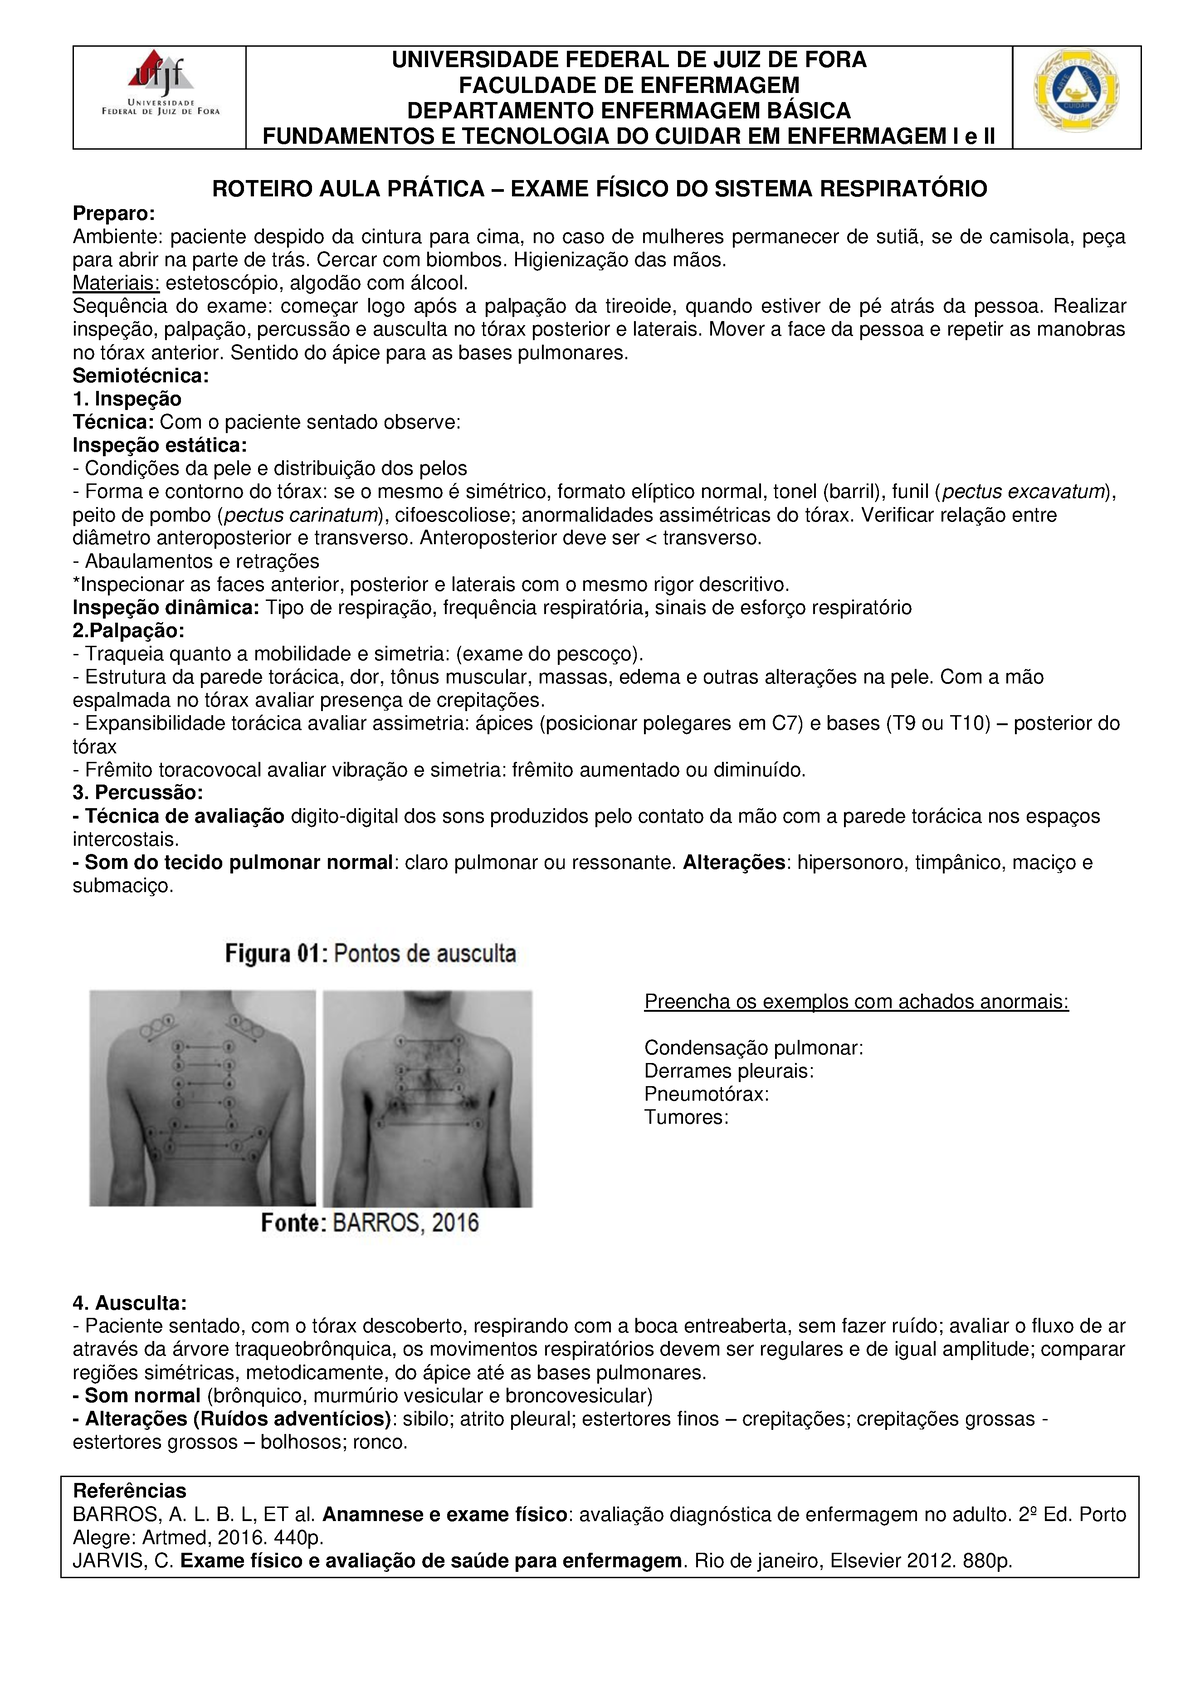 Instituto Brasileiro de Enfermagem - IBraEnf - 📋 ANAMNESE: ⤵ ➡ Consiste no  histórico de sintomas relatados pelo paciente sobre seu estado clínico. É a  coleta de dados subjetivos e também objetivos